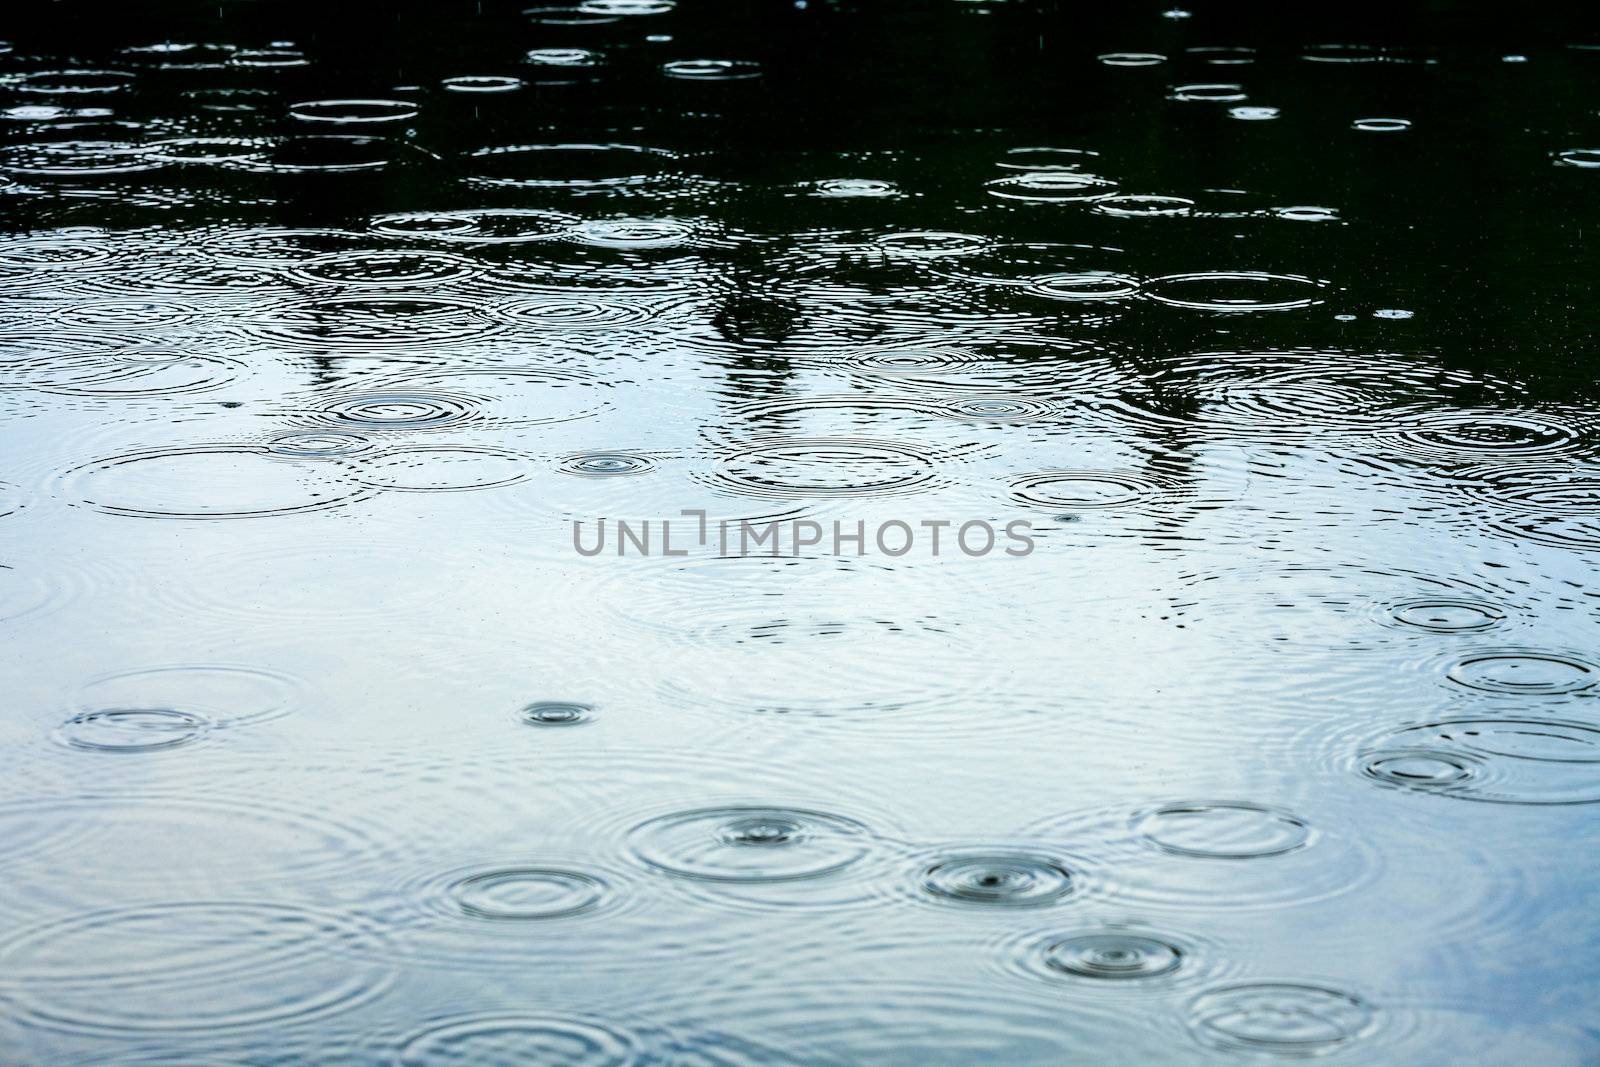 Raindrops at a water surface